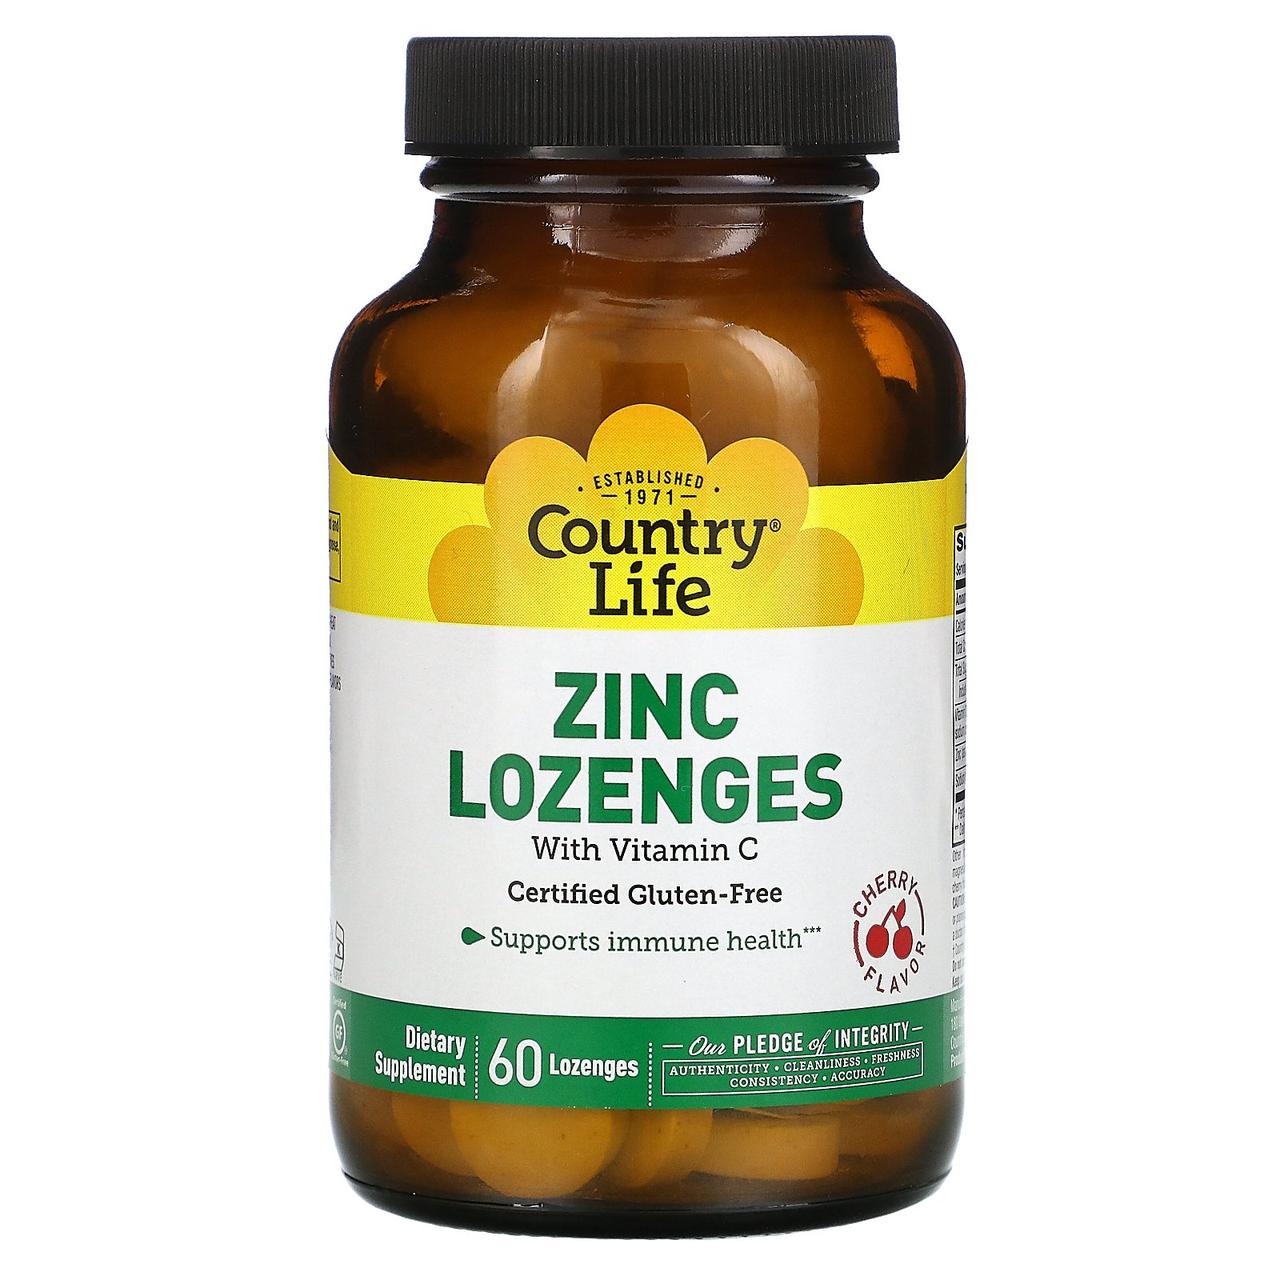 Цинк+вітамін З, вишневий смак, Zinc Lozenges, Vitamin C, Country Life, 60 льодяників